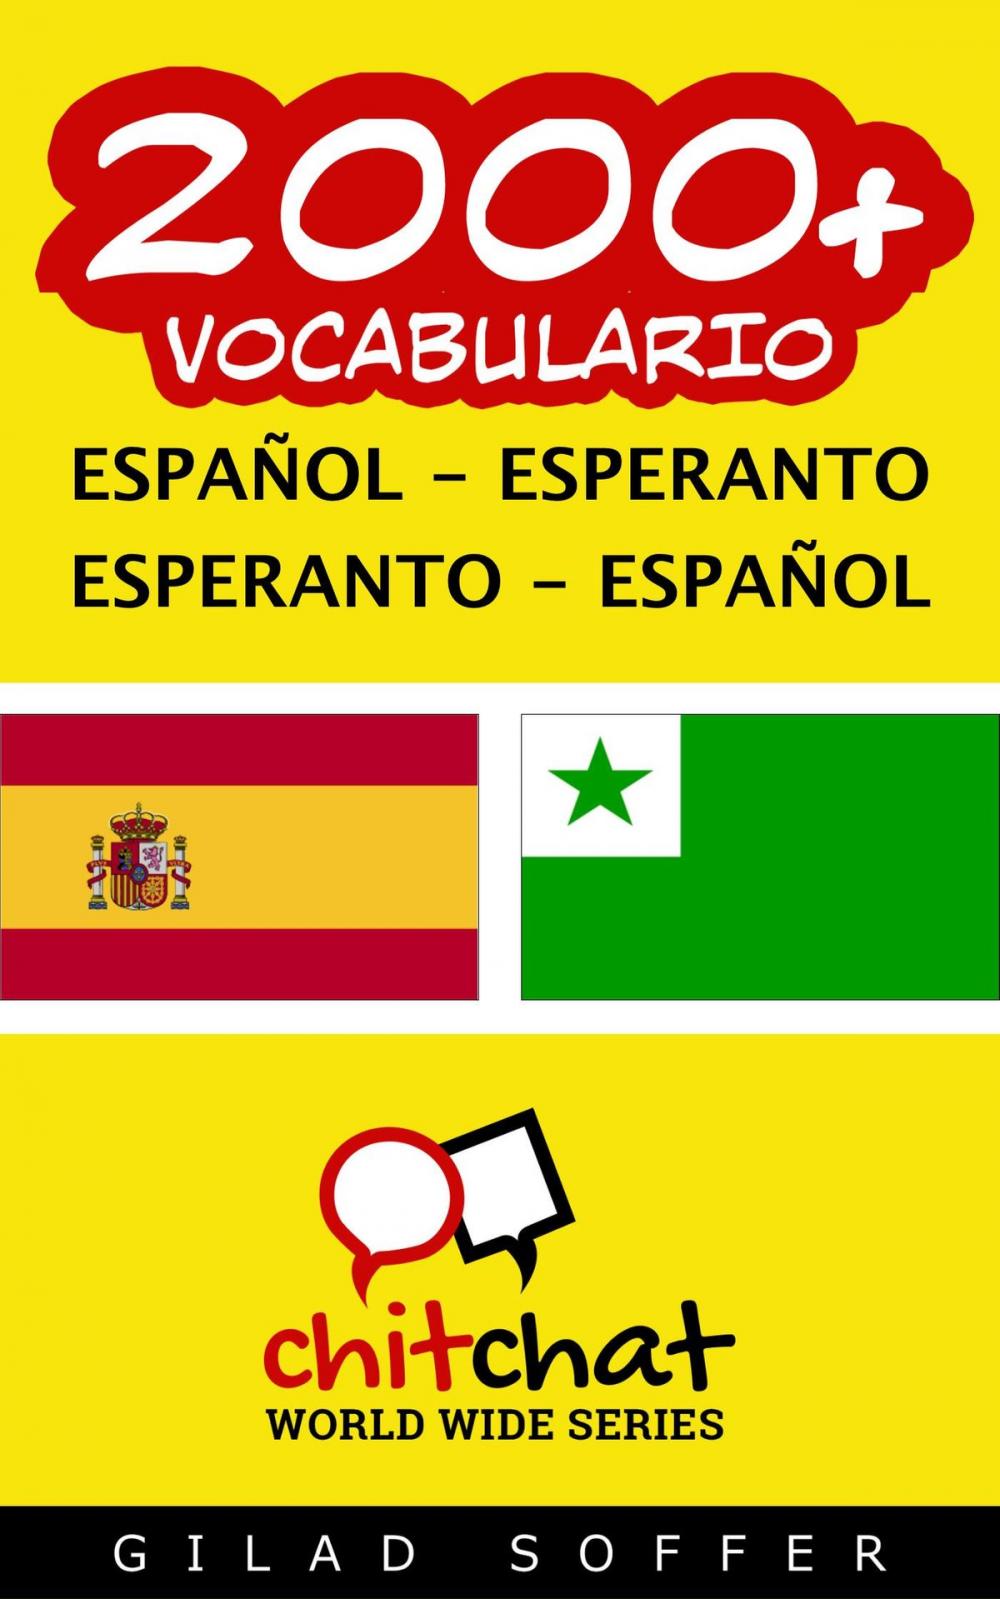 Big bigCover of 2000+ vocabulario español - esperanto